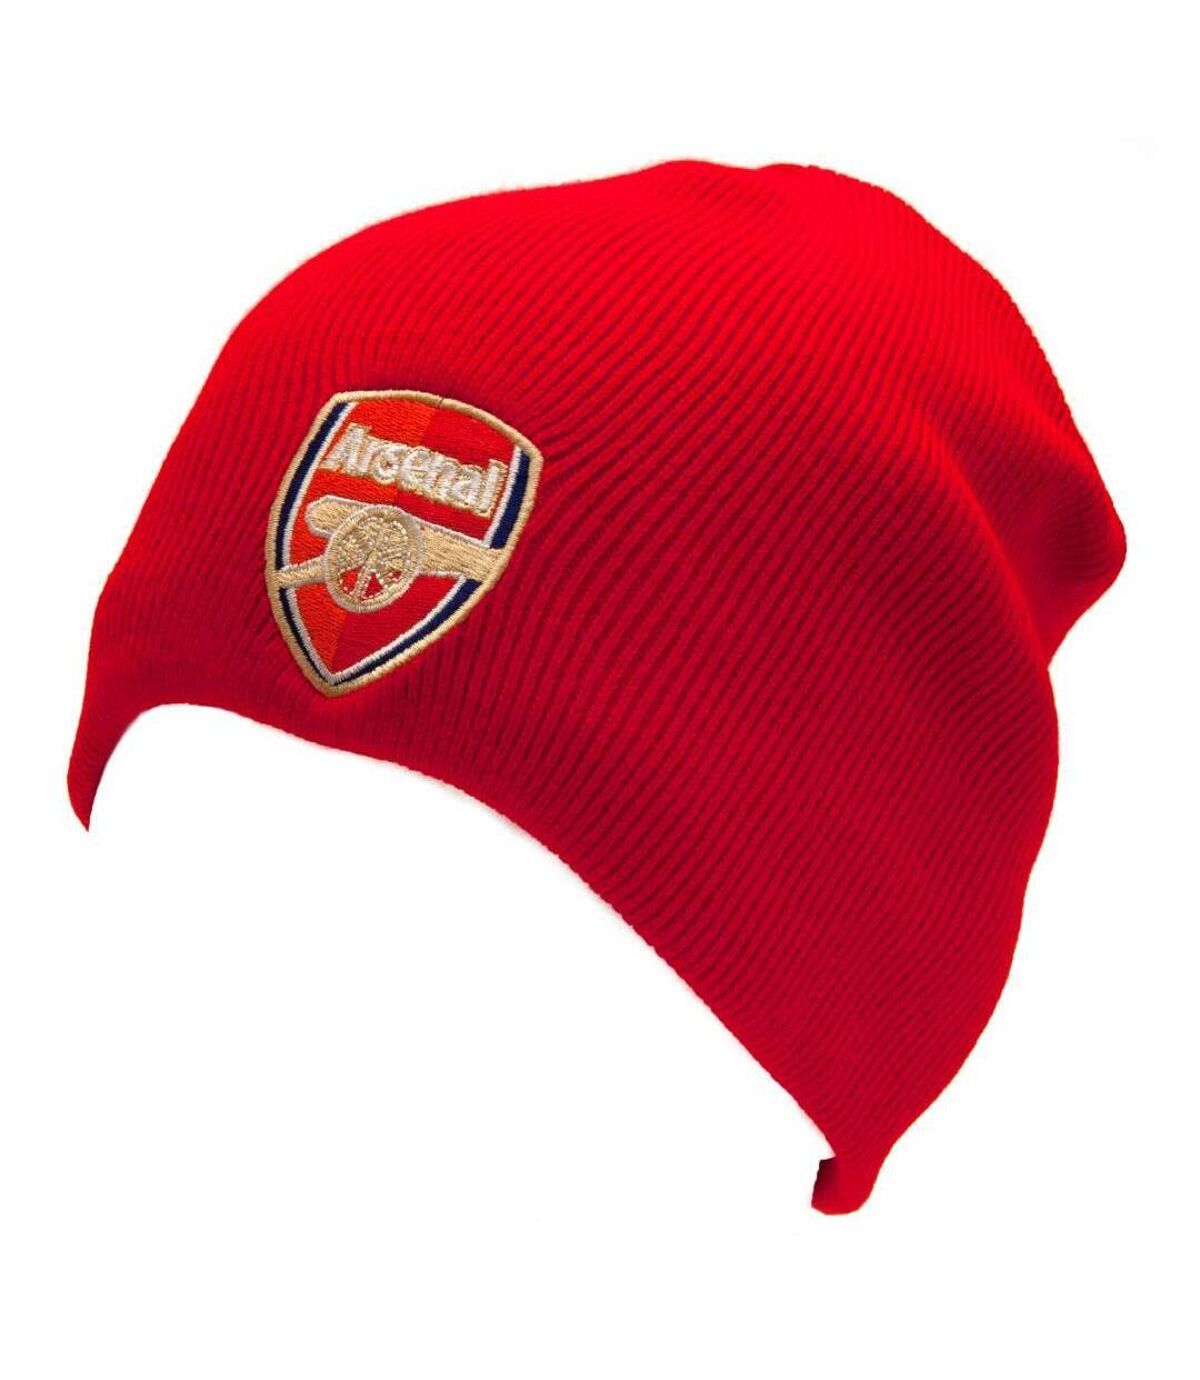 Arsenal FC Bonnet tricoté en forme de dôme (Rouge) - UTTA734